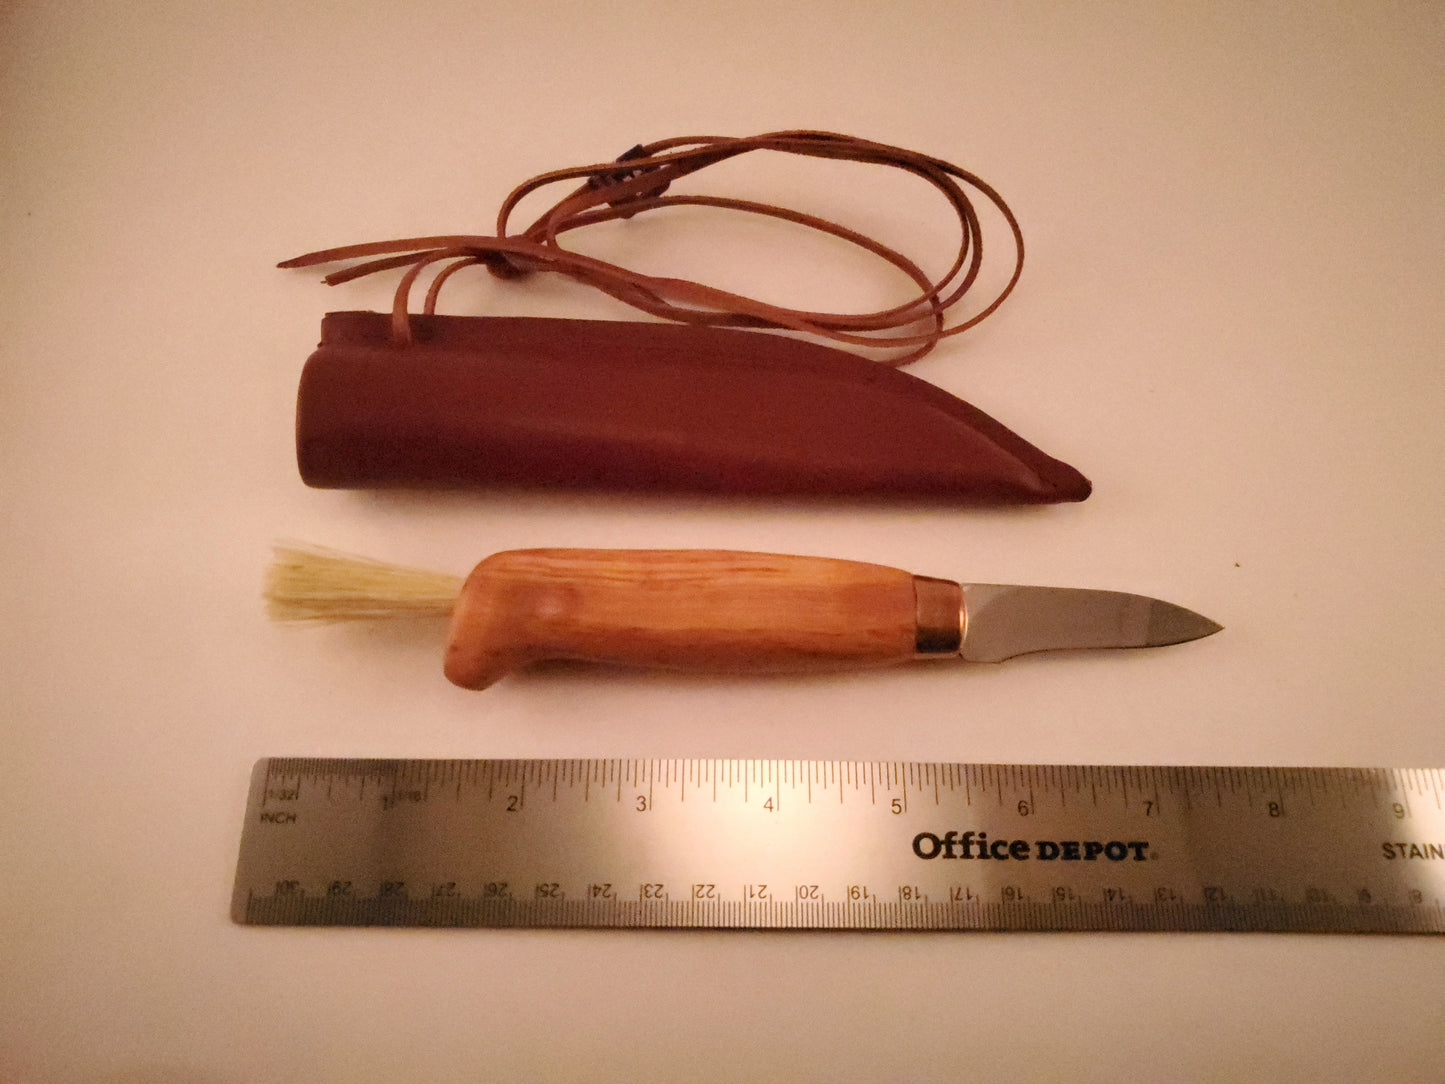 Wood Jewel Mushroom Knife Bushcraft Outdoor Puukko Knife